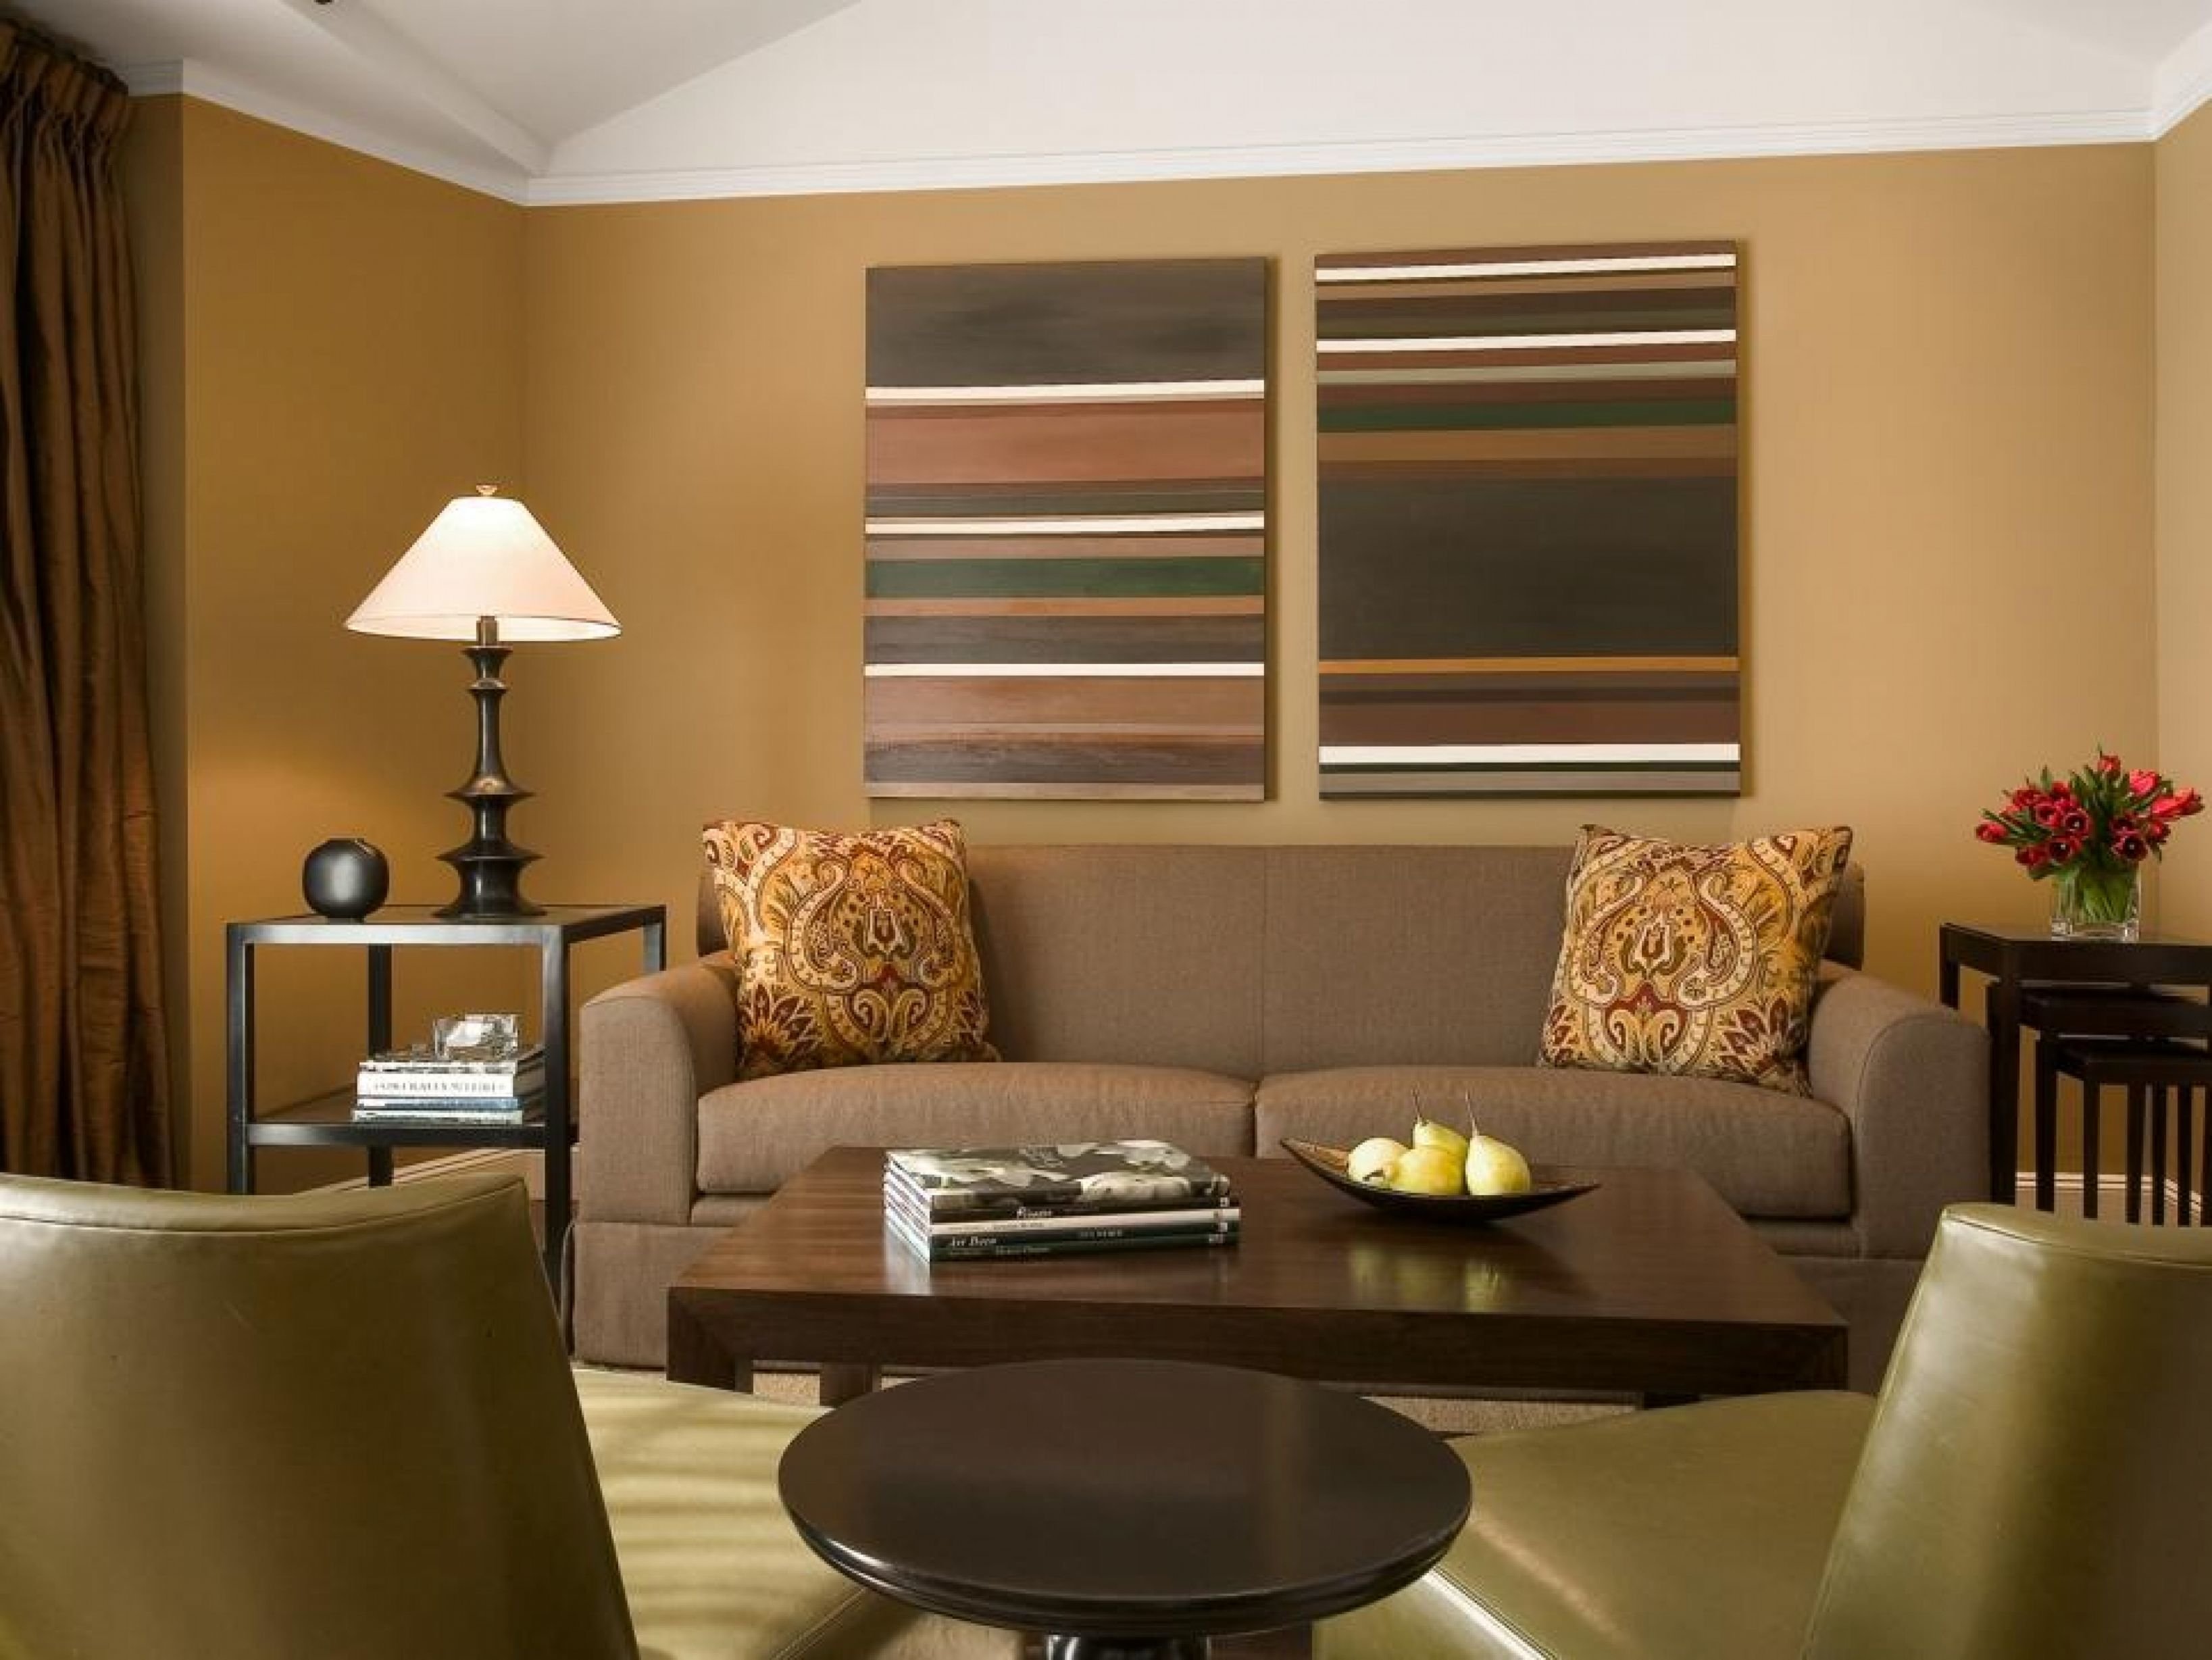 Цвета стен в интерьере гостиной. Интерьер в коричневых тонах. Цветовые сочетания в интерьере. Сочетание цветов в интерьере гостиной. Сочетание коричневого в интерьере.